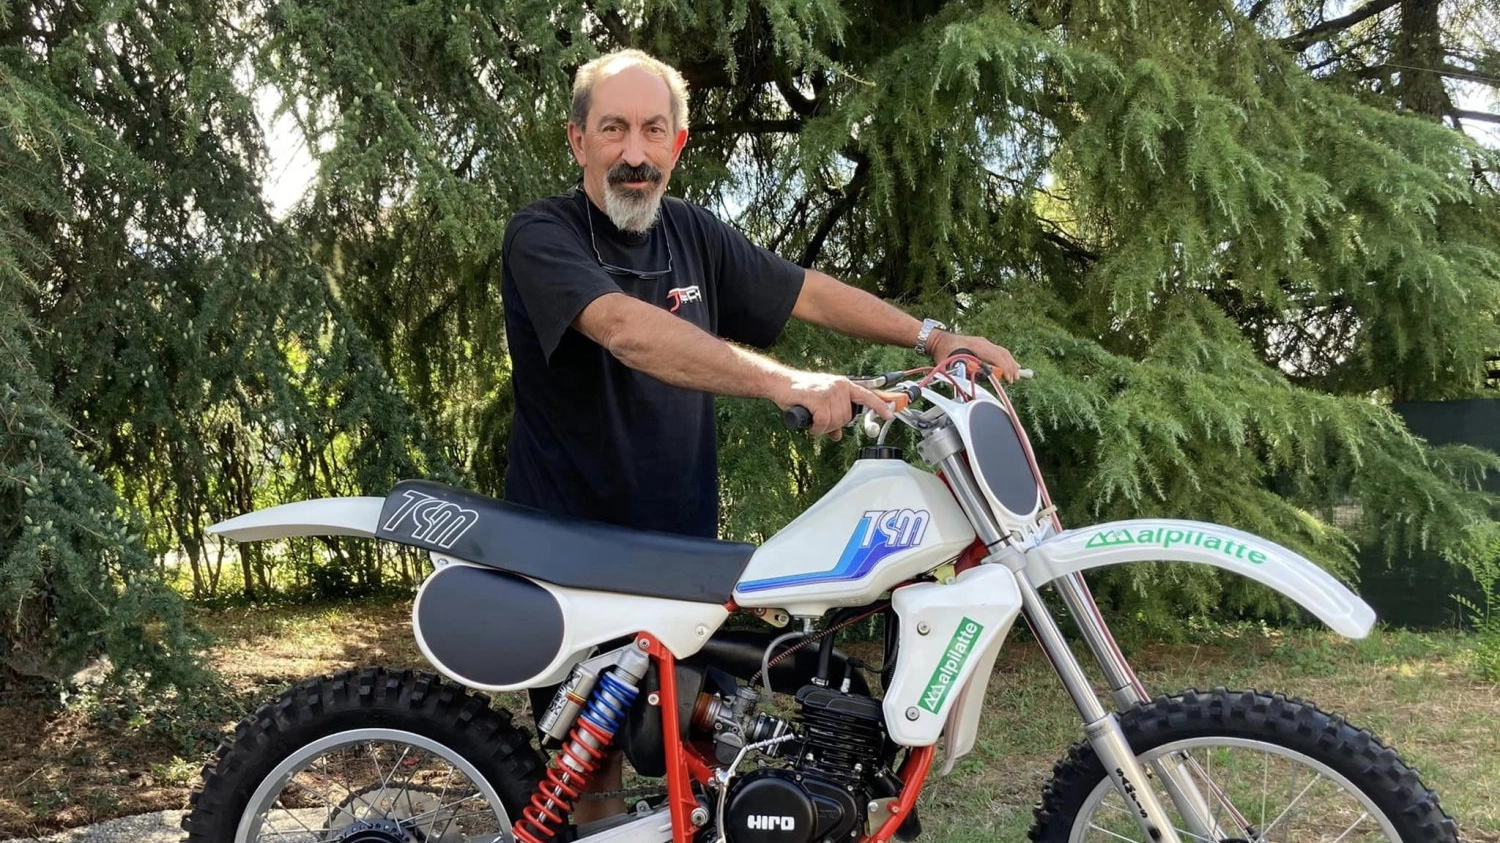 Il meccanico di motocross Iller Aldini è morto all'età di 68 anni dopo una malattia